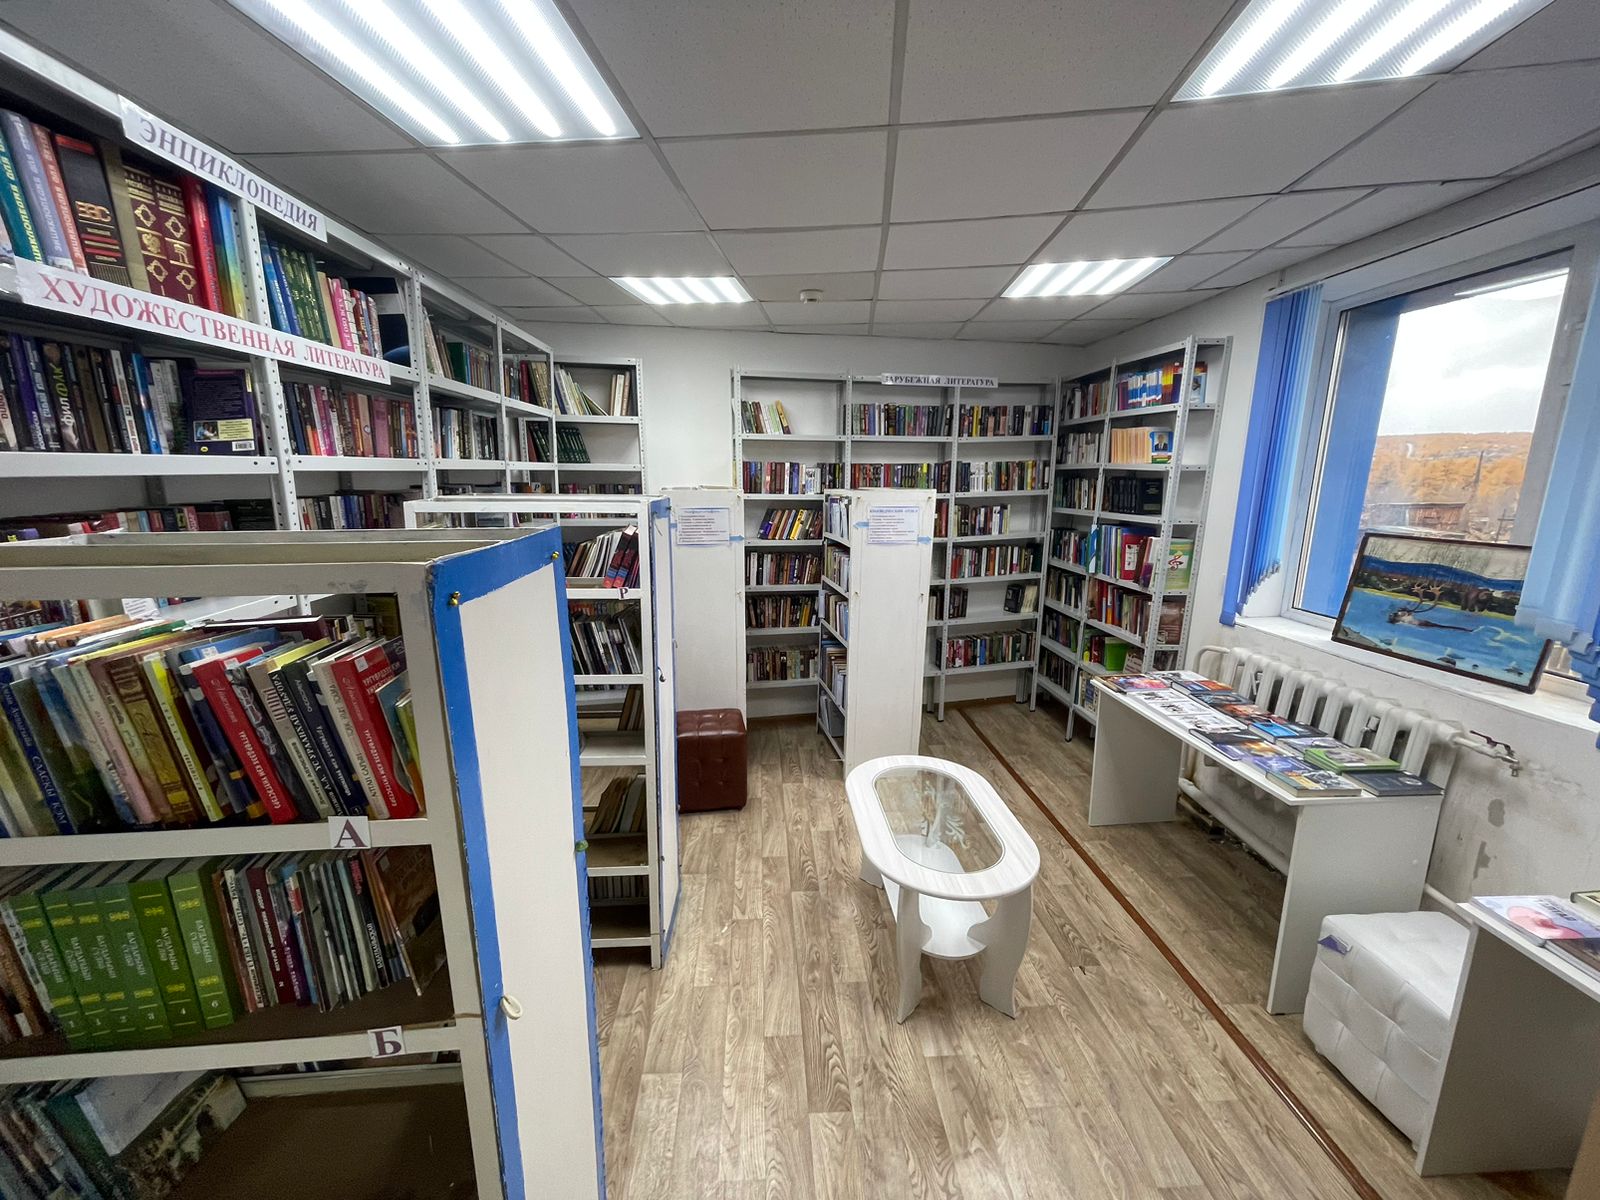 Модельная библиотека открылась в селе Харыялах Оленекского района